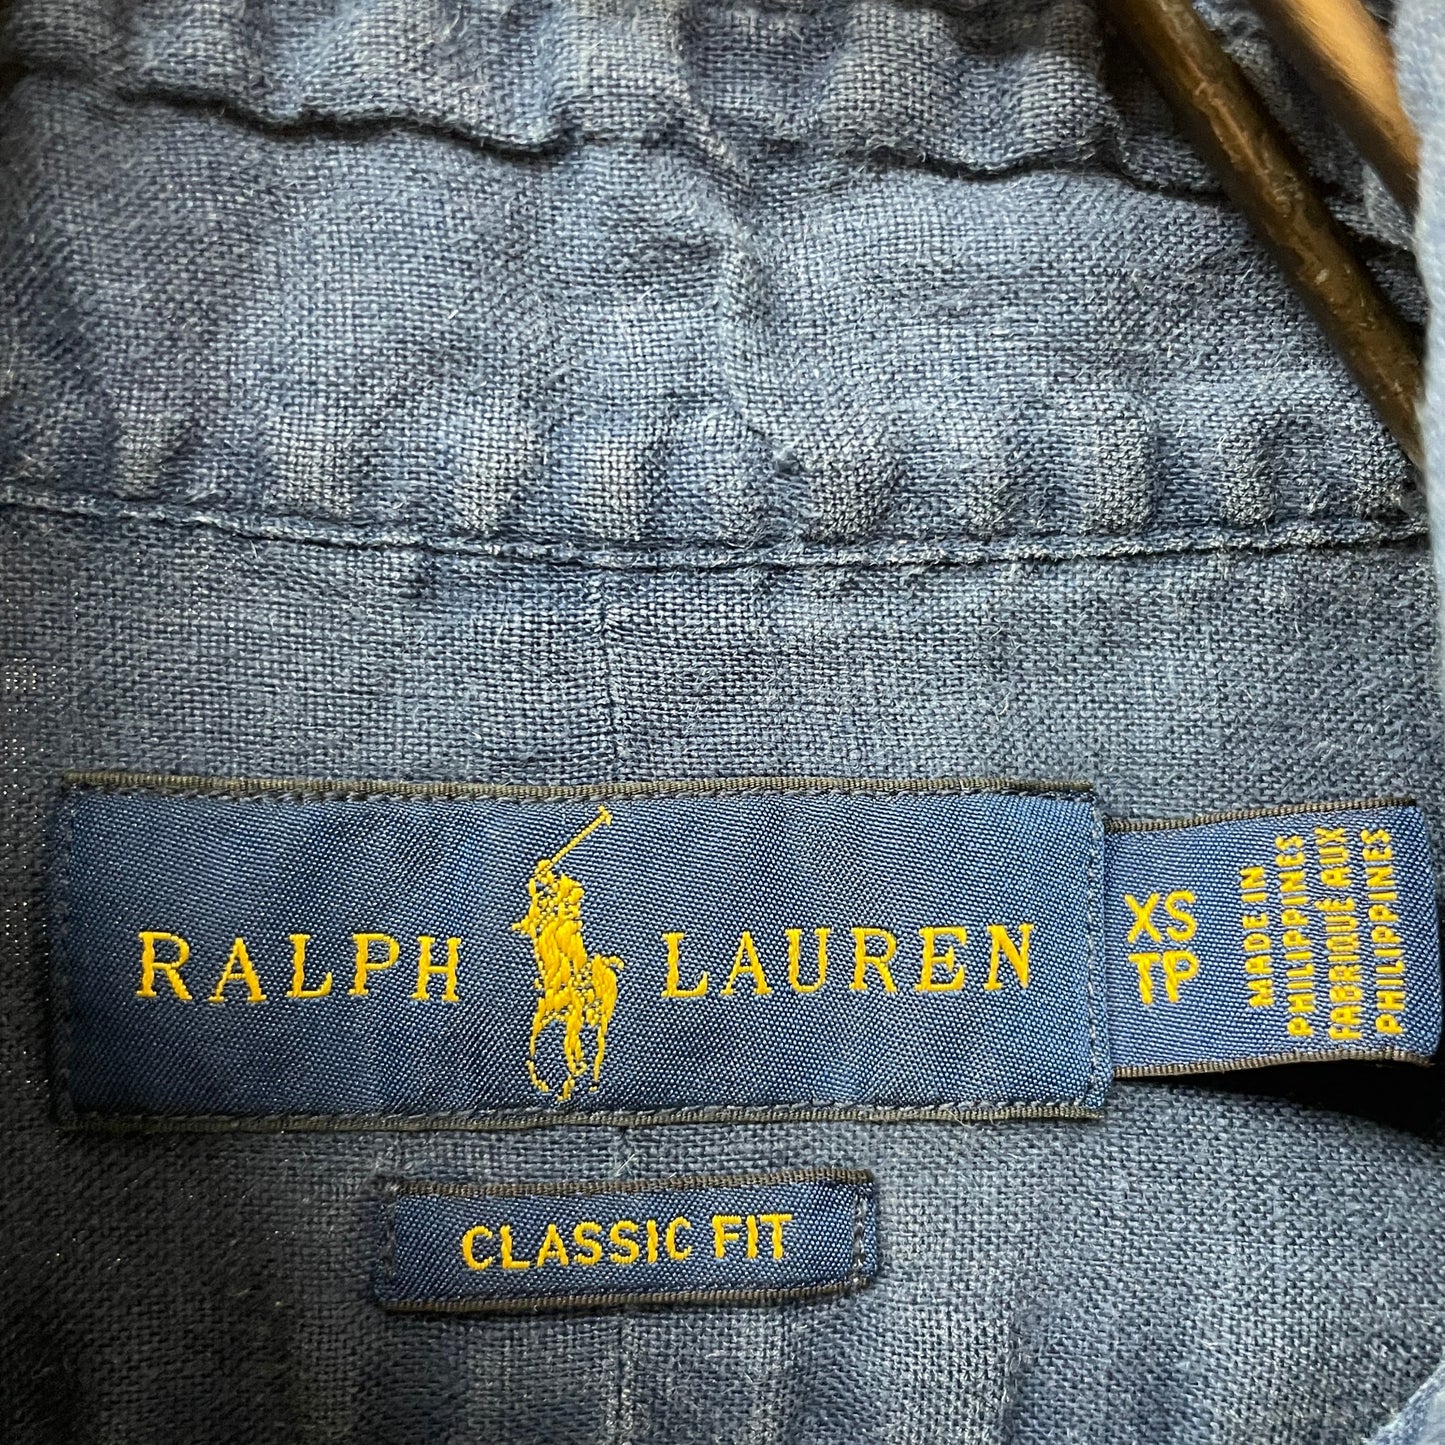 Ralph Lauren shirt Ralph Lauren shirt classic fit navy linen shirt